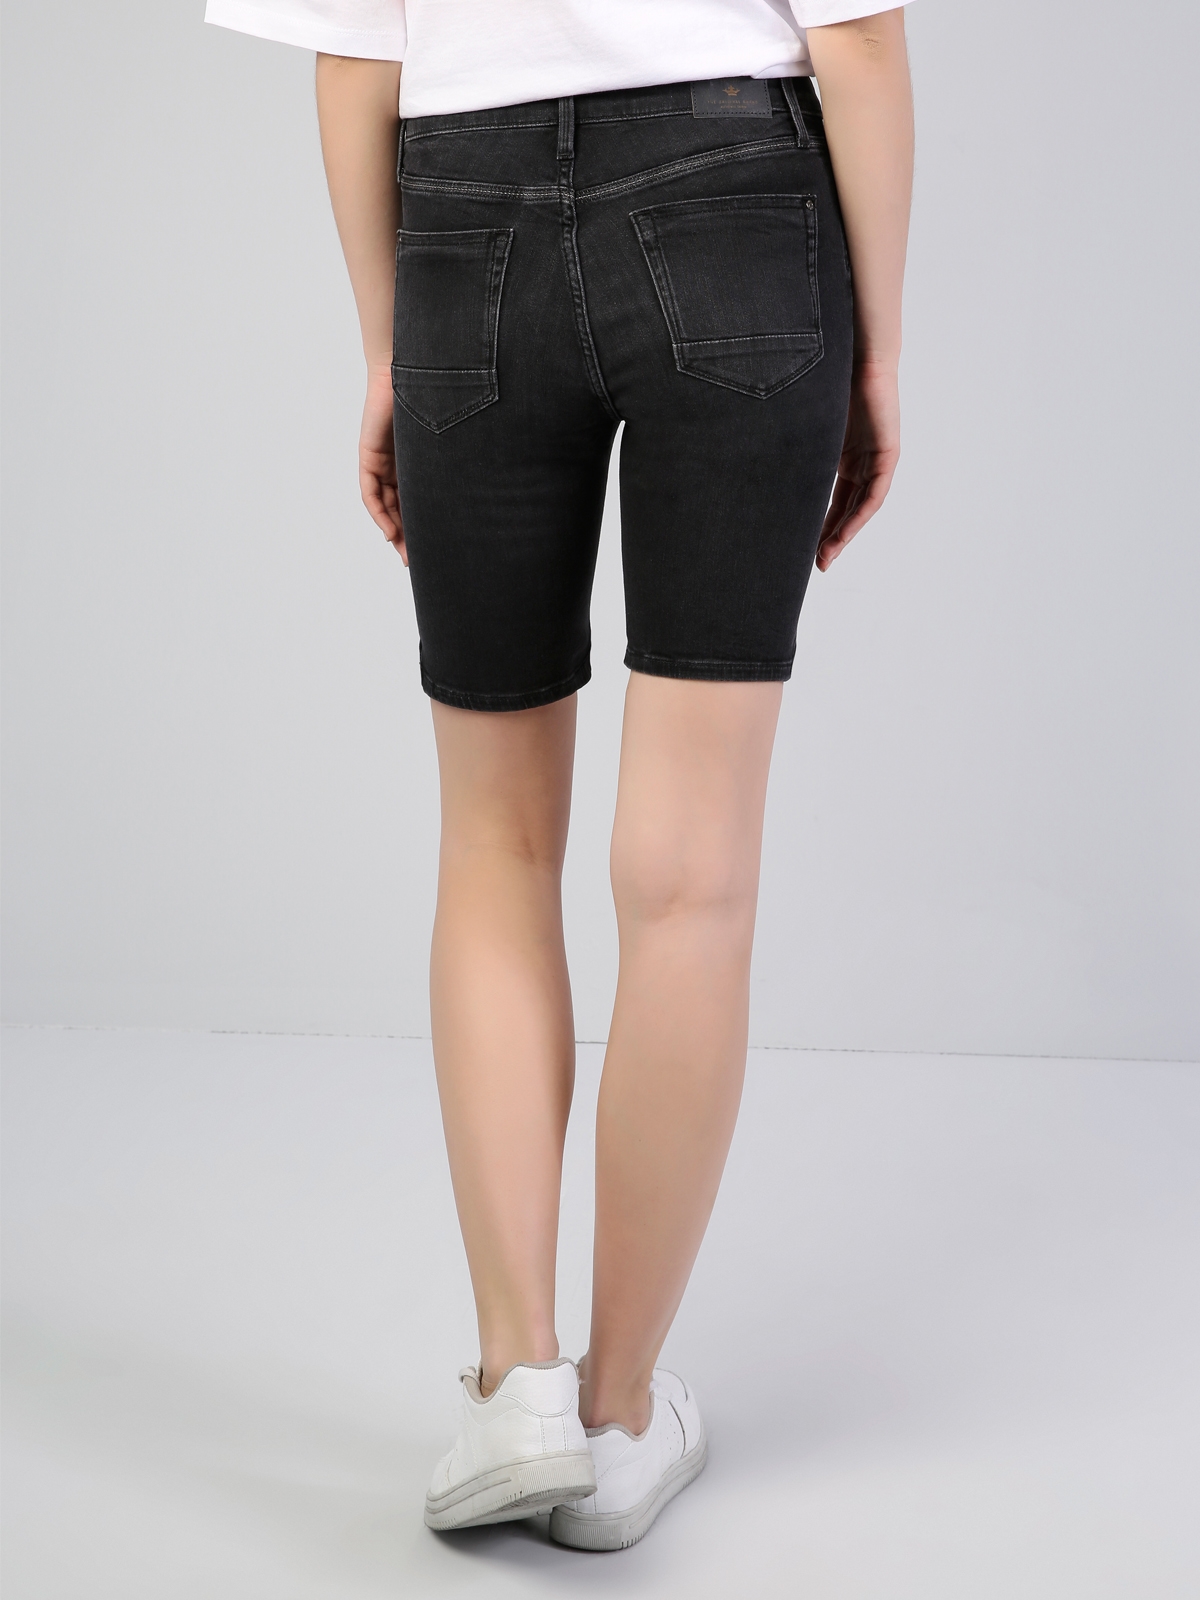 Afișați detalii pentru Short / Pantaloni Scurti De Dama Negru Super Slim Fit 